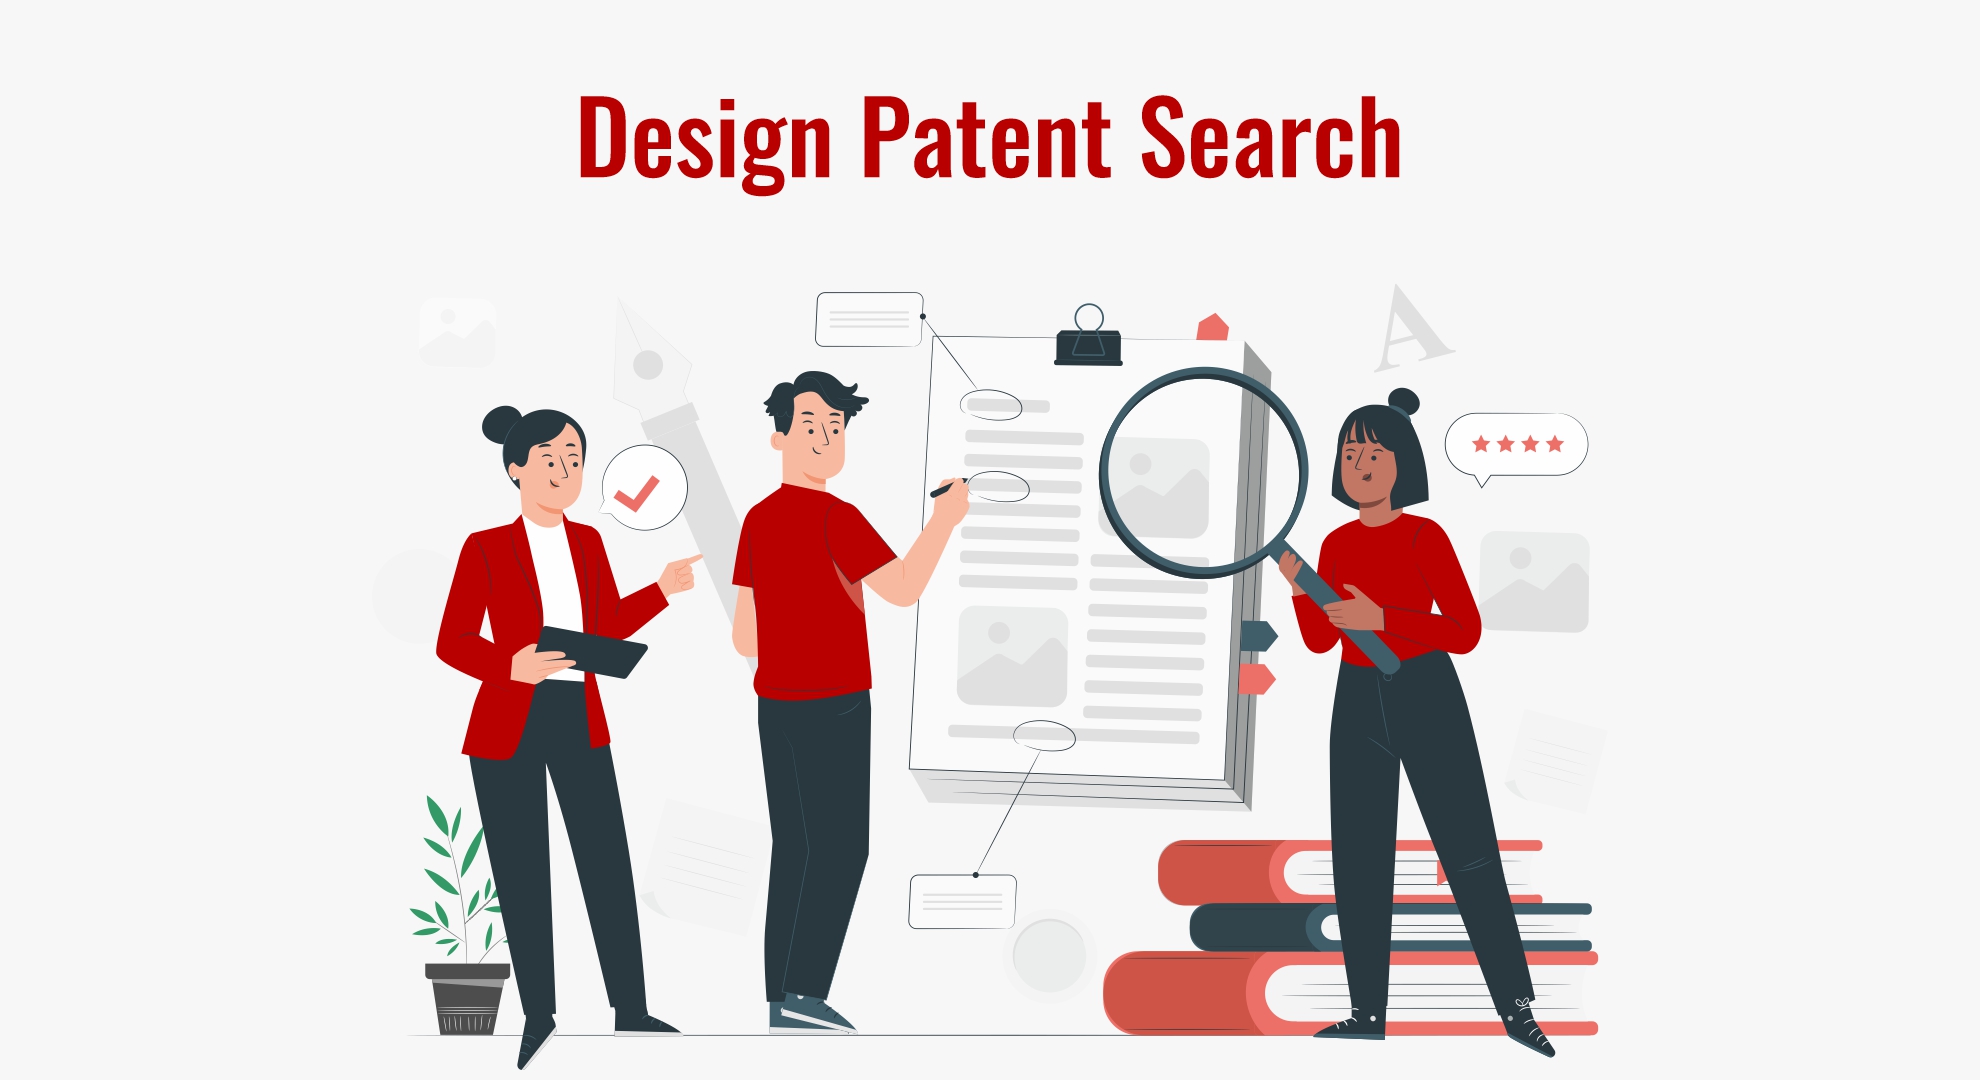 Design Patent Search